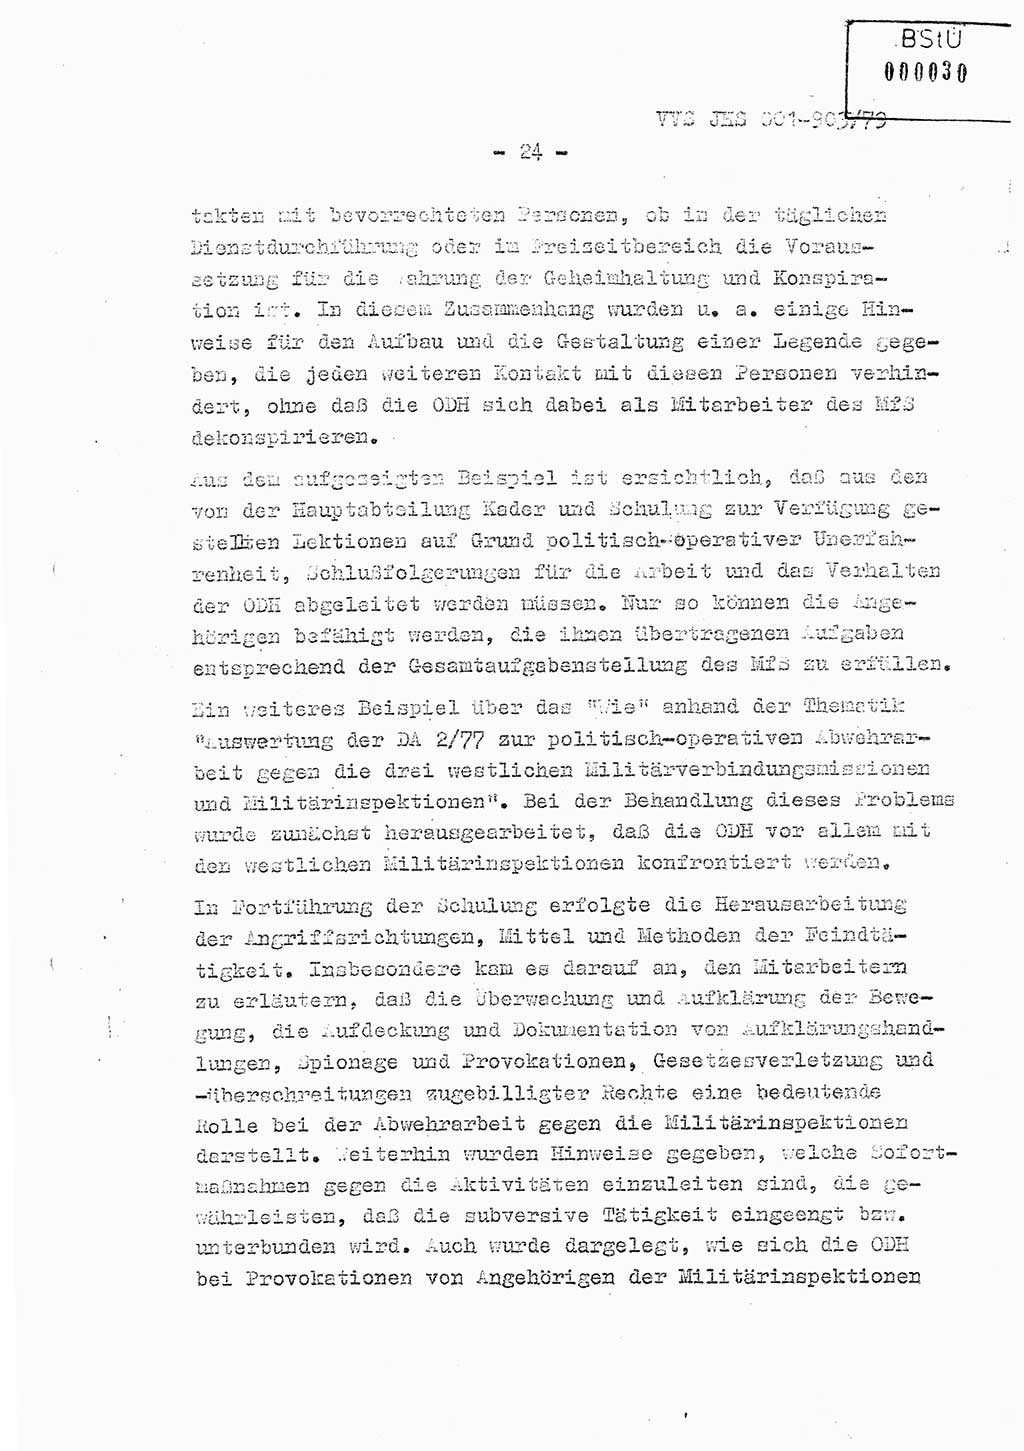 Fachschulabschlußarbeit Oberleutnant Jochen Pfeffer (HA Ⅸ/AGL), Ministerium für Staatssicherheit (MfS) [Deutsche Demokratische Republik (DDR)], Juristische Hochschule (JHS), Vertrauliche Verschlußsache (VVS) 001-903/79, Potsdam 1979, Seite 24 (FS-Abschl.-Arb. MfS DDR JHS VVS 001-903/79 1979, S. 24)